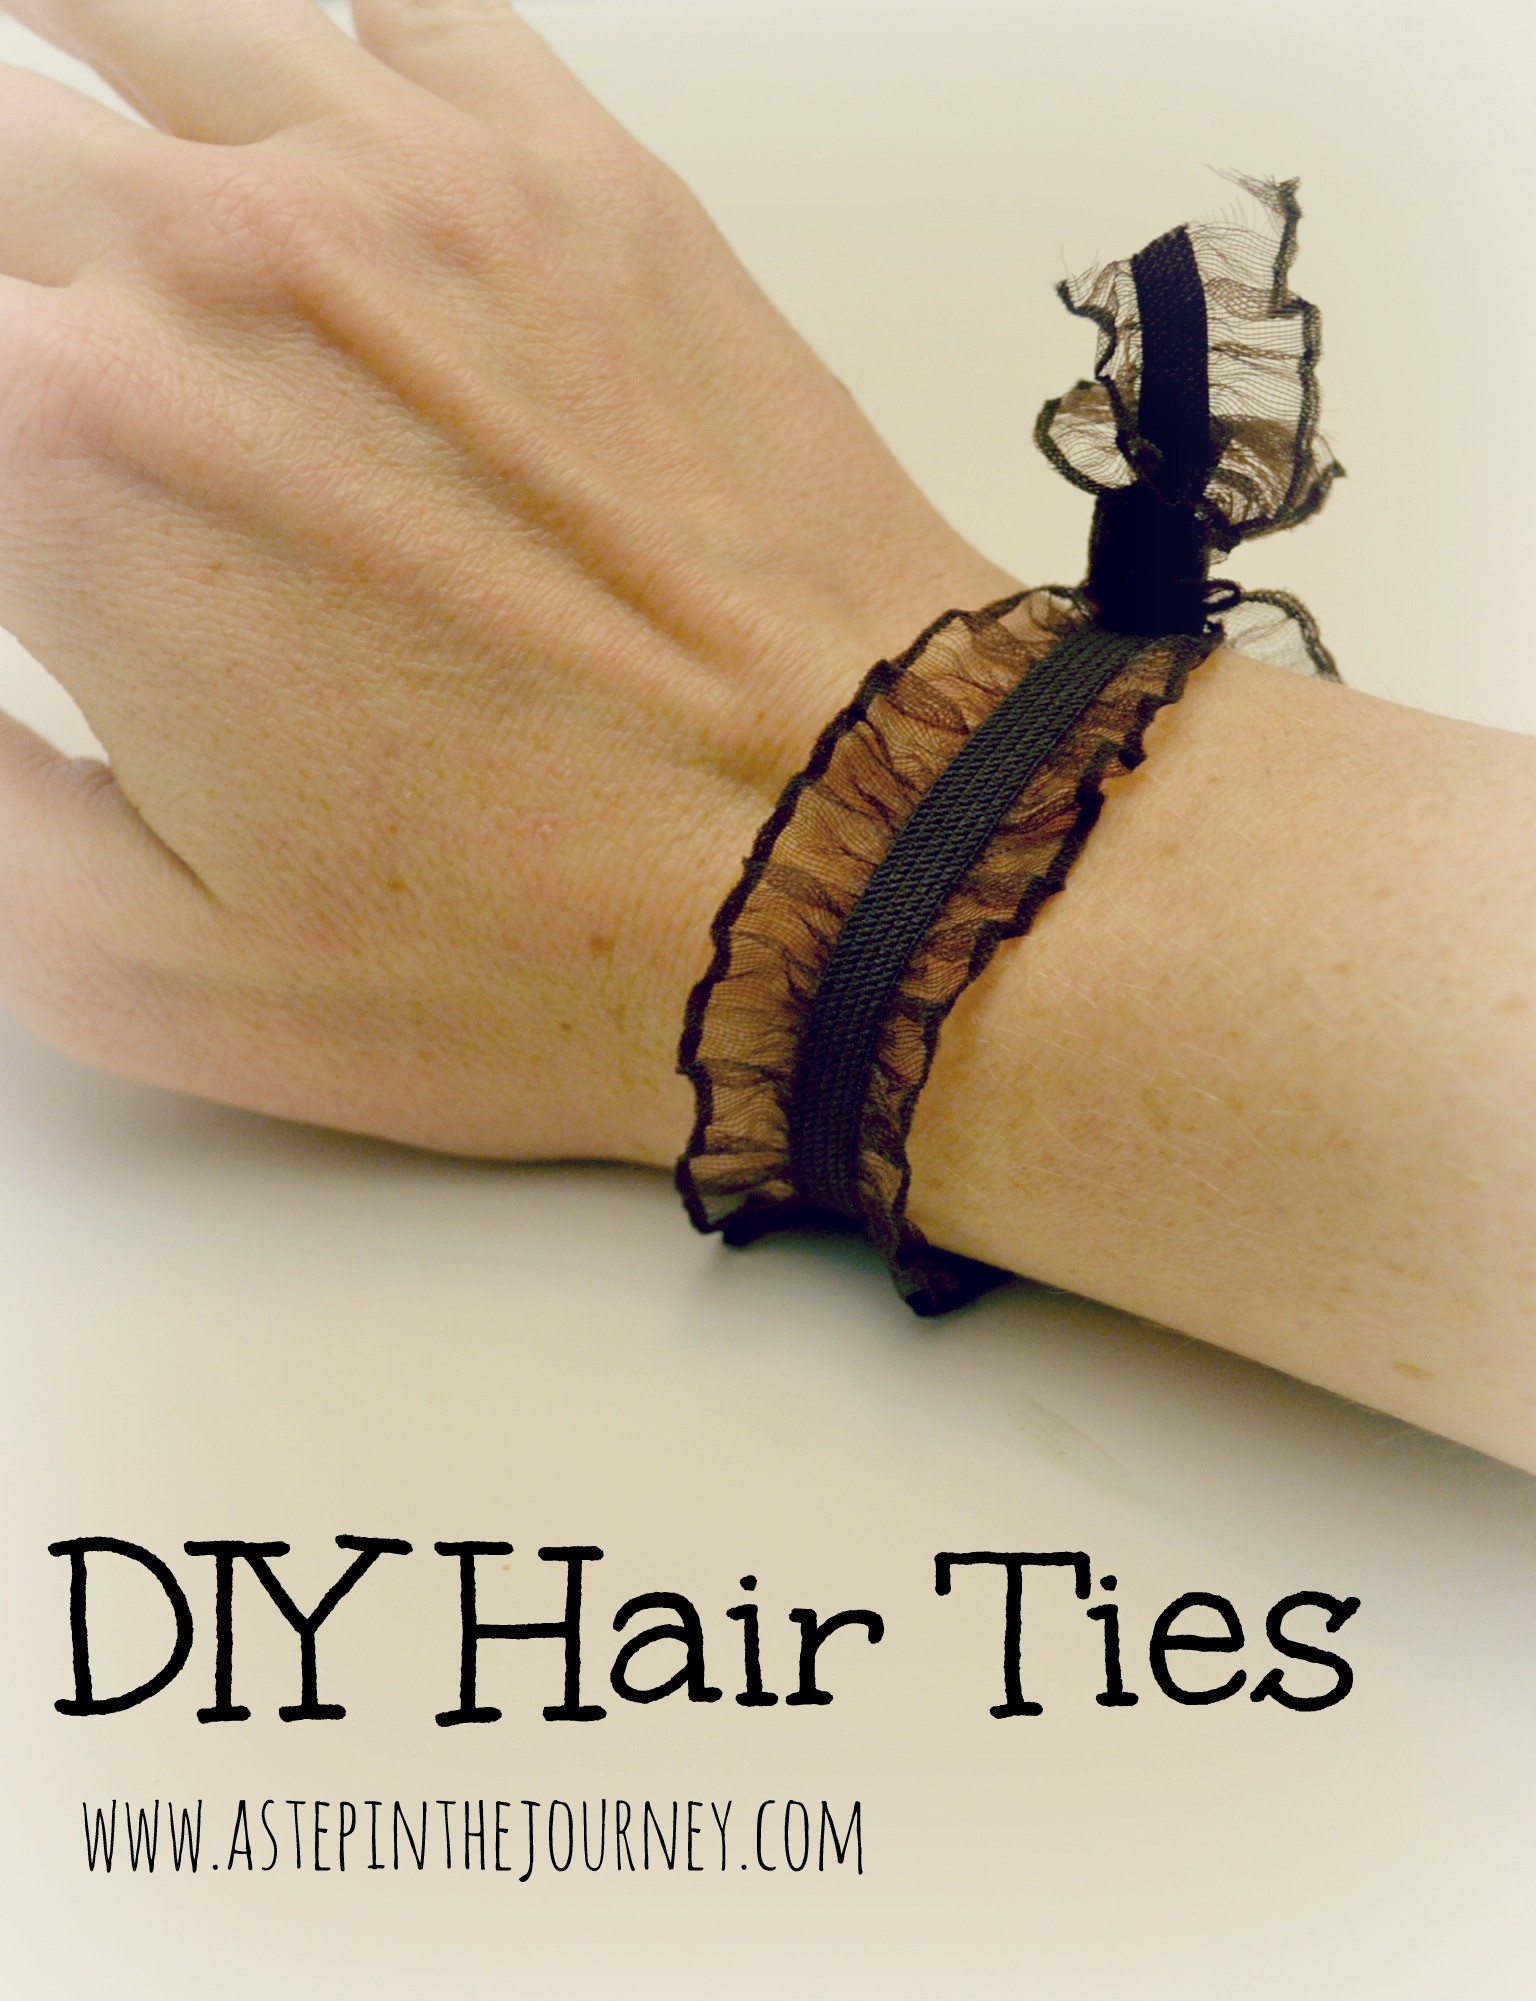 Best ideas about DIY Hair Ties
. Save or Pin DIY Elastic Hair Tie Now.